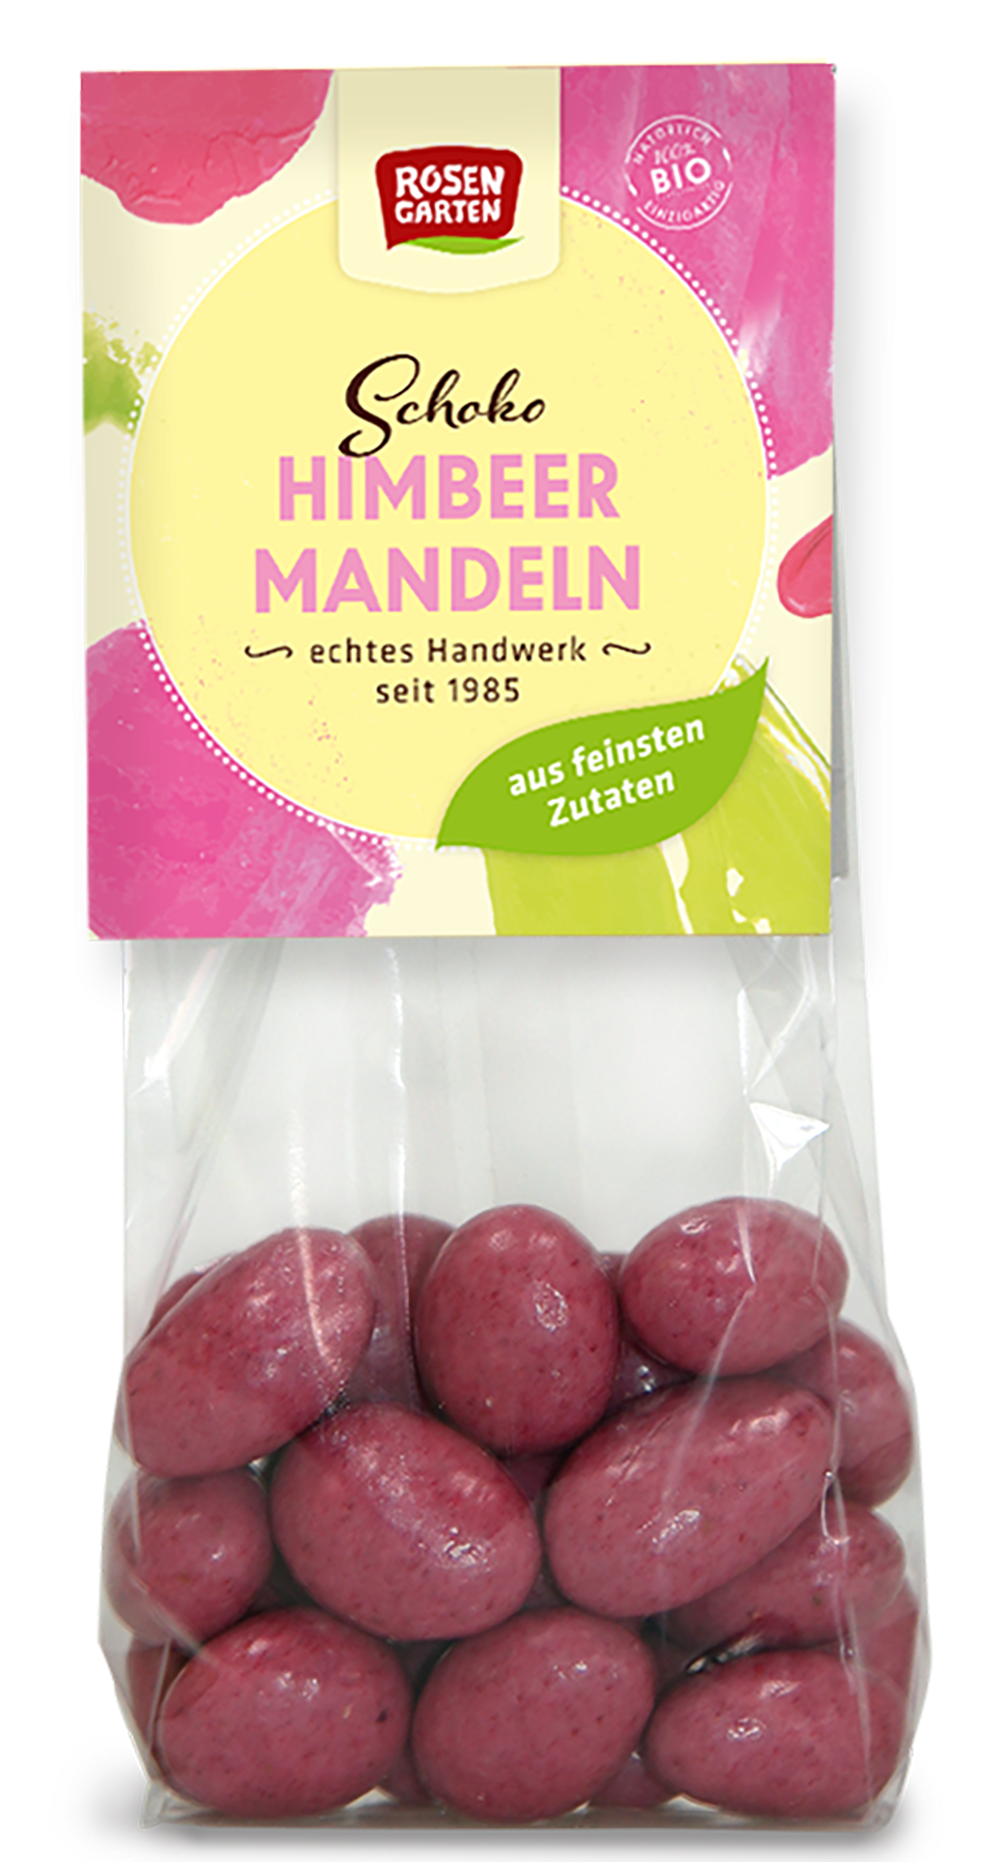 Rosengarten Schoko Himbeer-Mandeln 100g/S